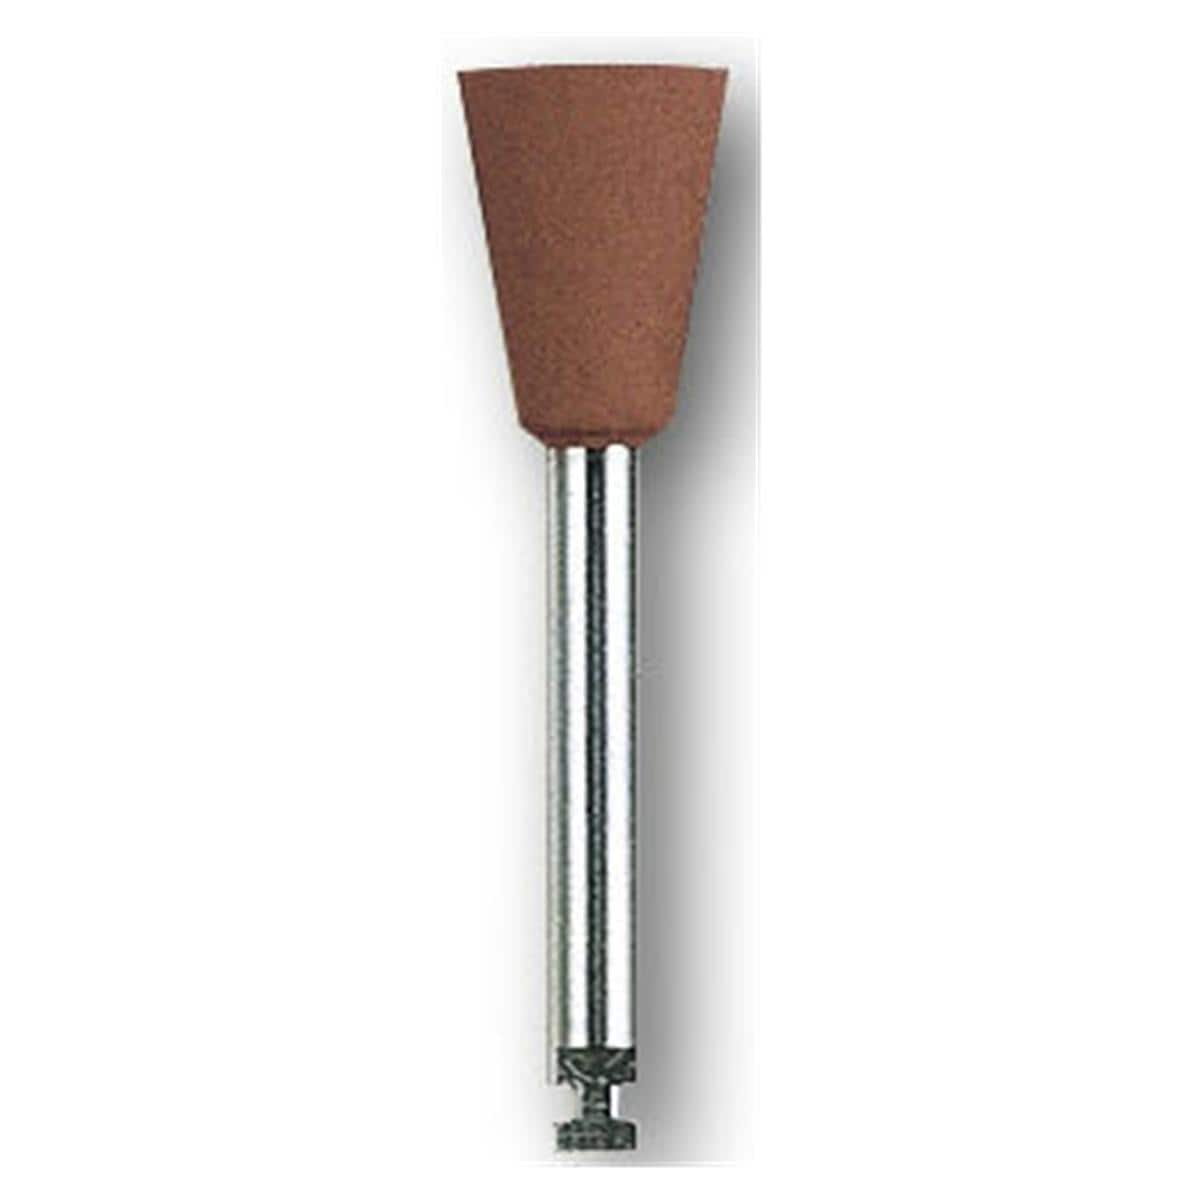 HS-Amalgam Polierer - Nachfüllpackung - Kelch braun, 0652, Polierkopf: 6,5 x 9,5 mm, Packung 12 Stück